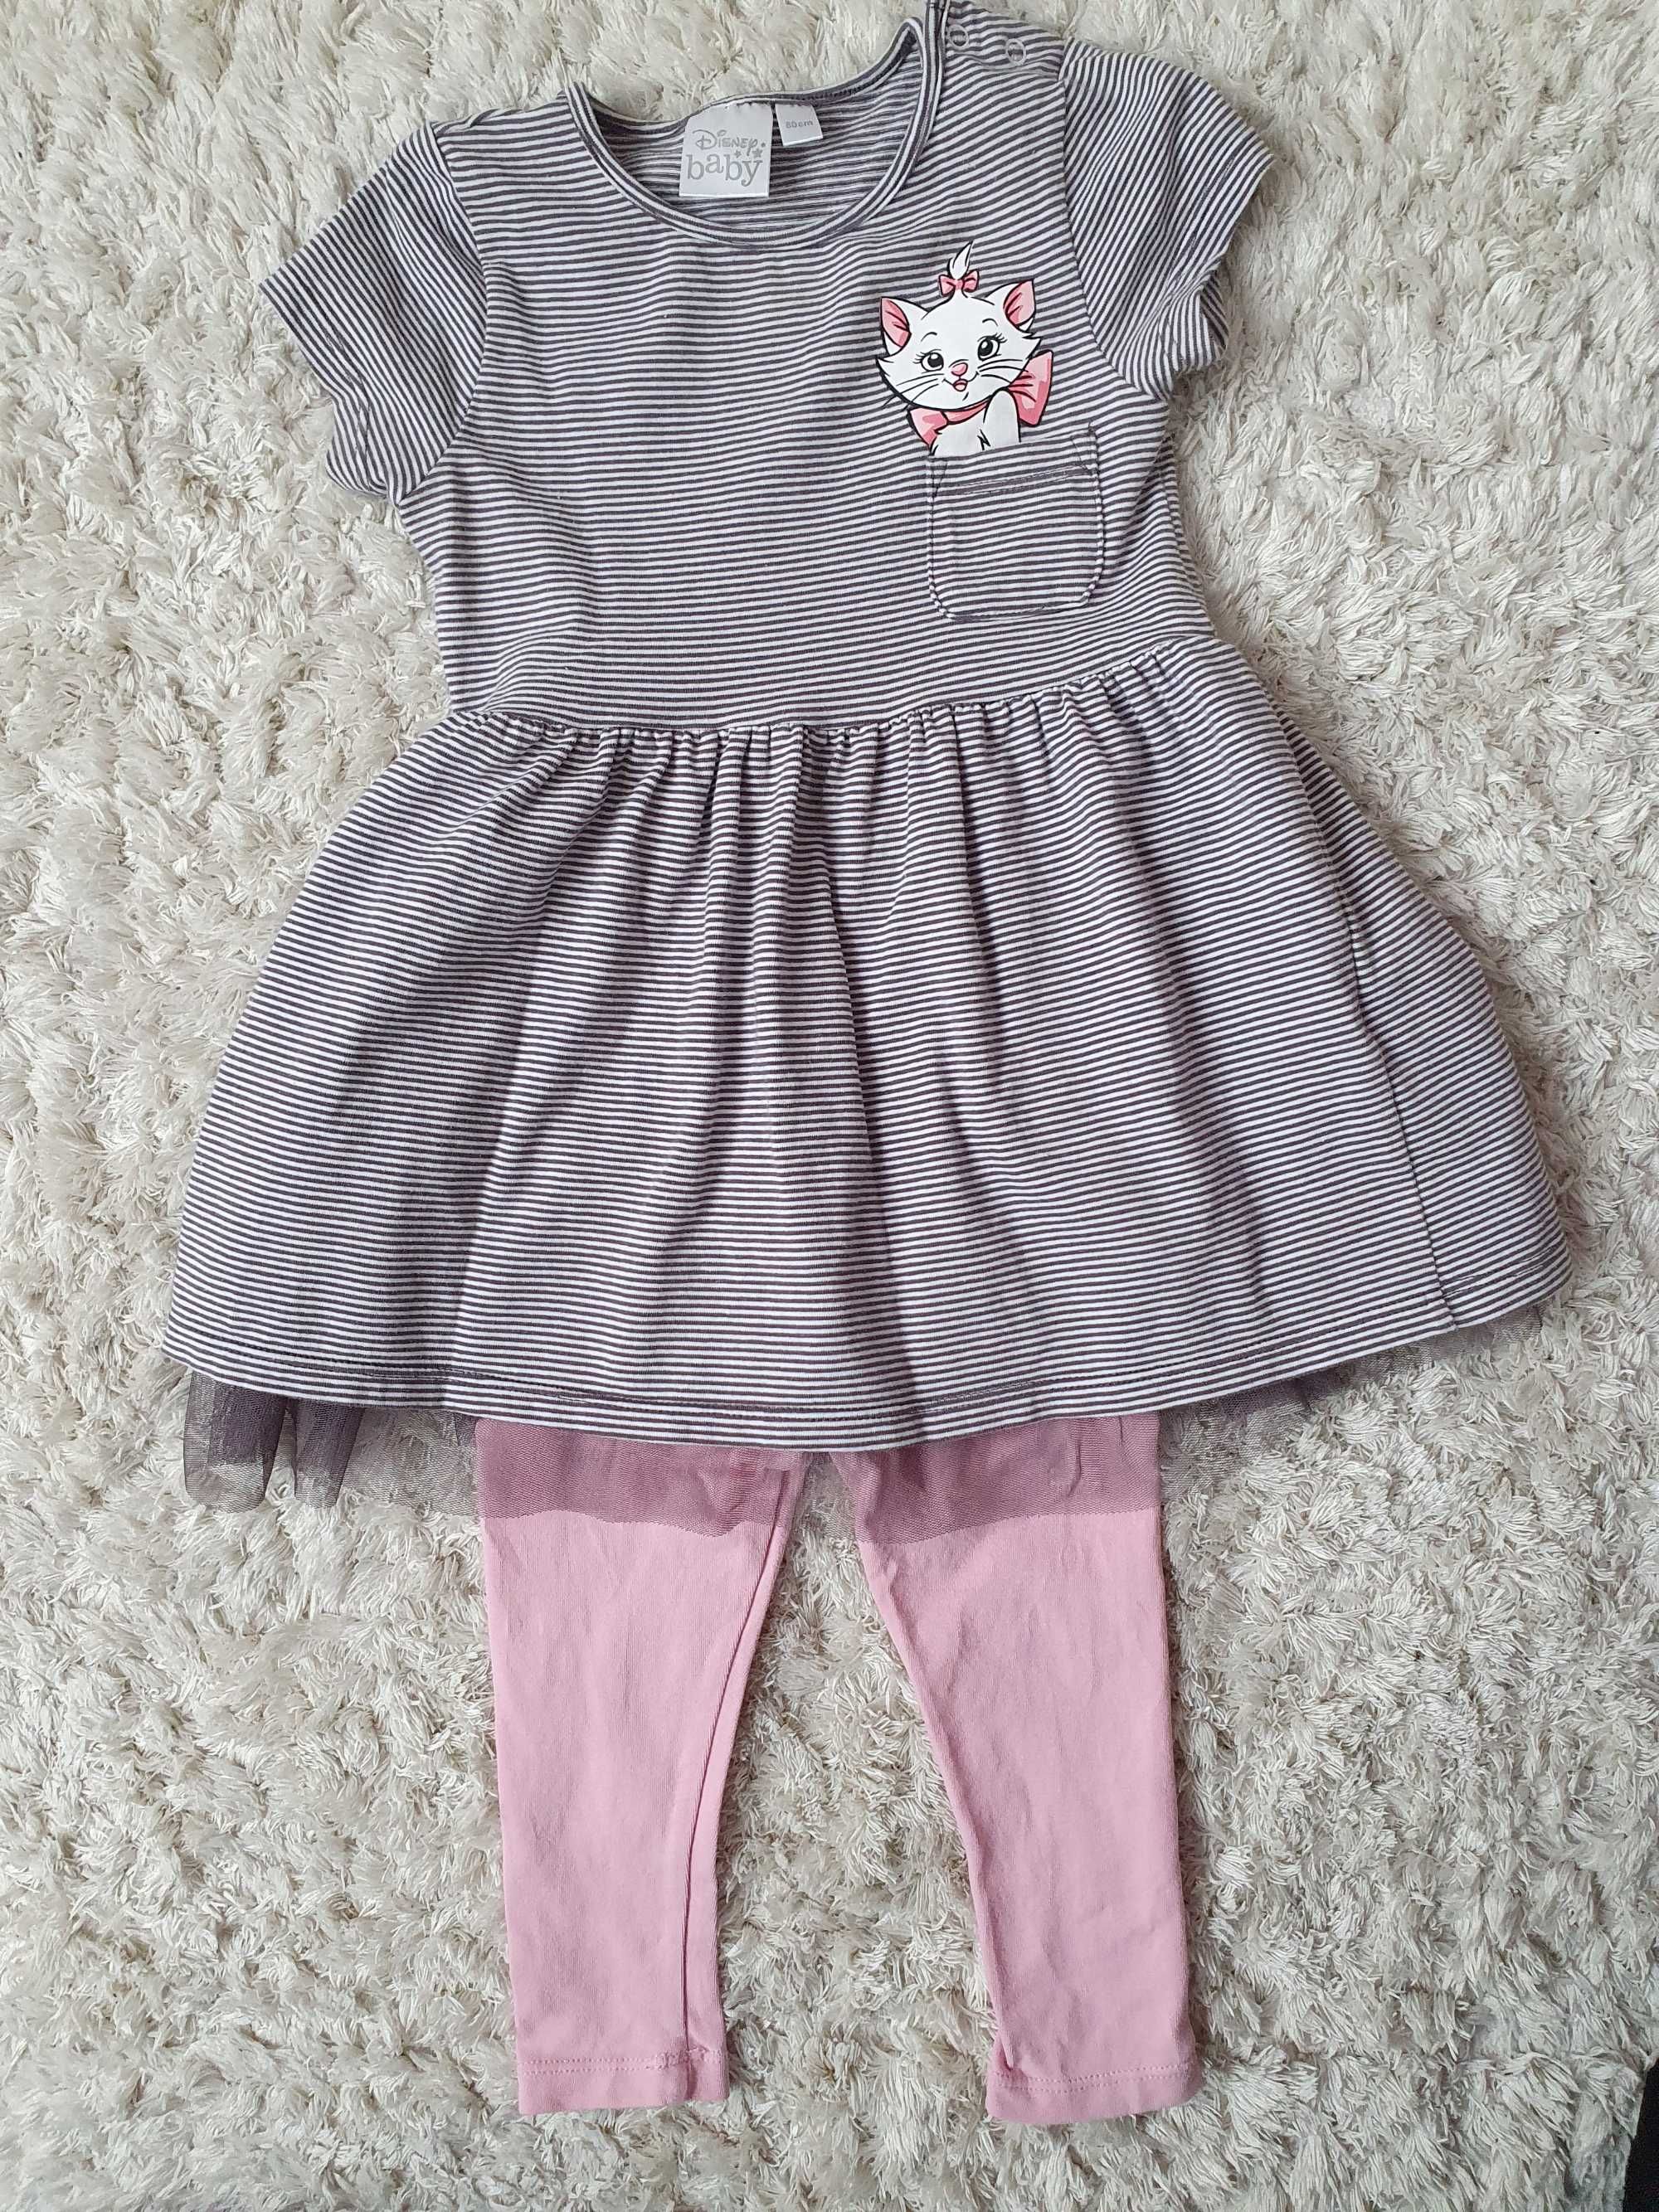 Zestaw tunika/ sukienka + legginsy Disney Baby r.80